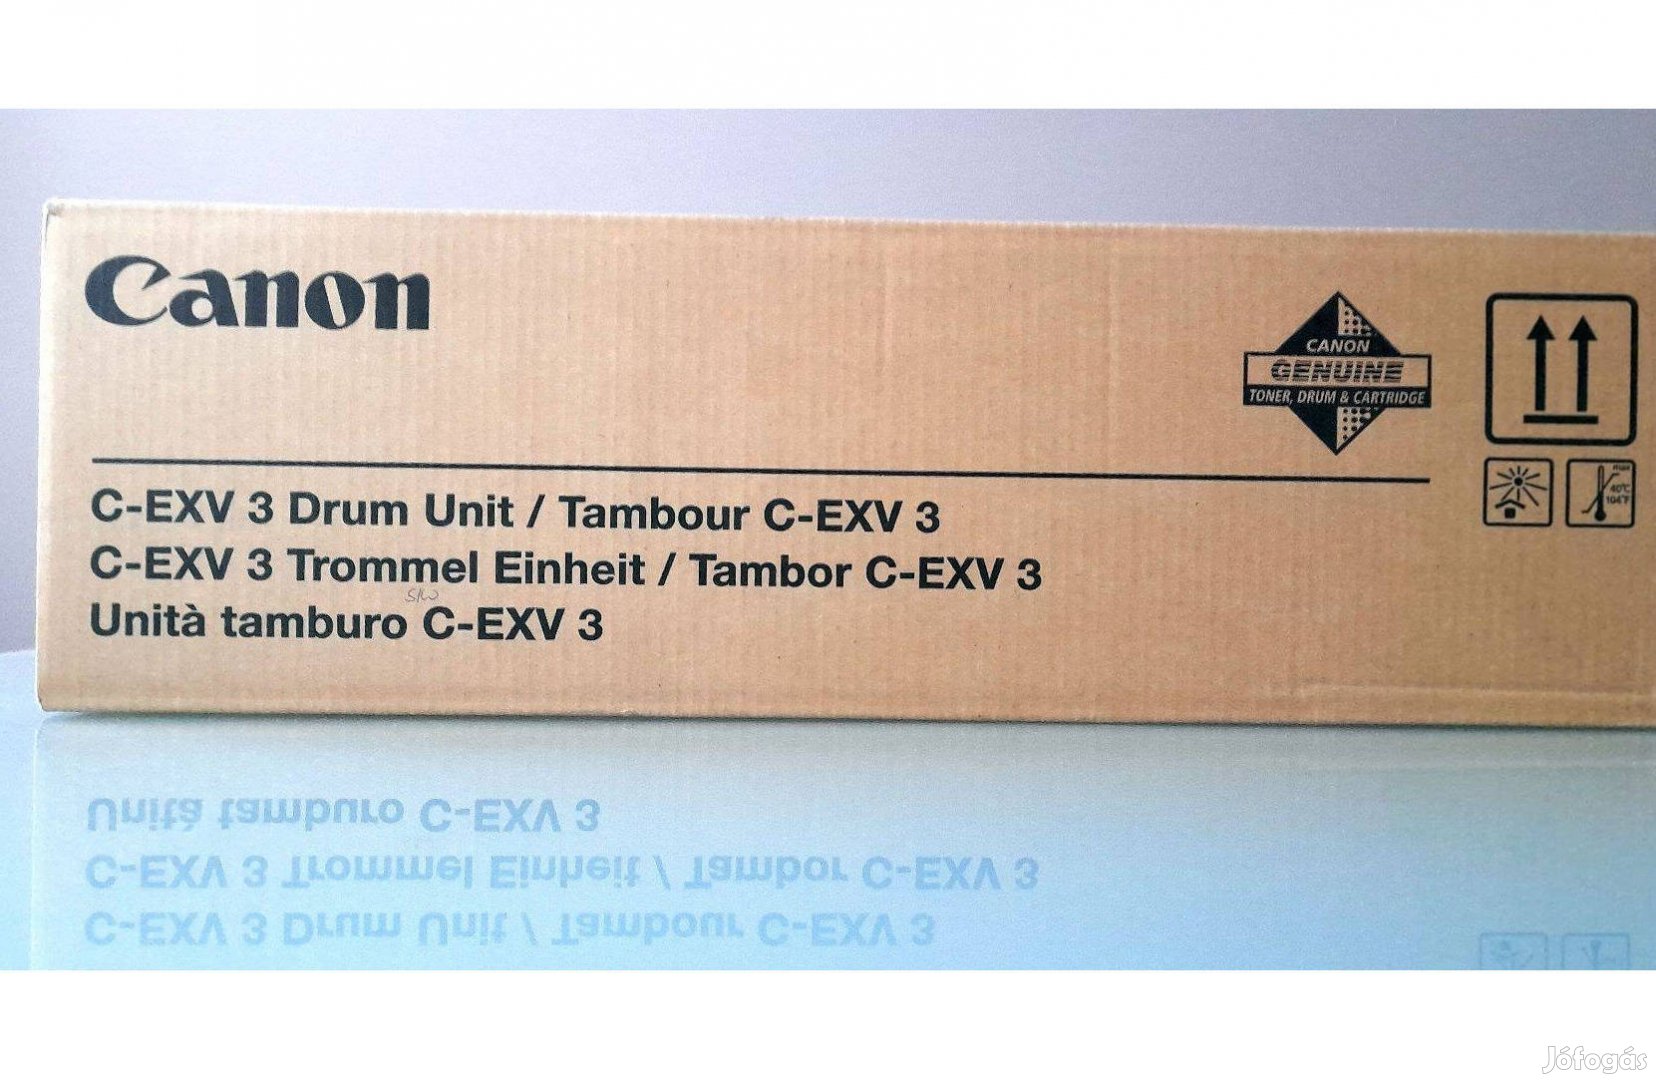 Canon C-Exv 3 eredeti dob, Exv-3 OPC Kit, Cexv3 dobegység = 30480-Ft